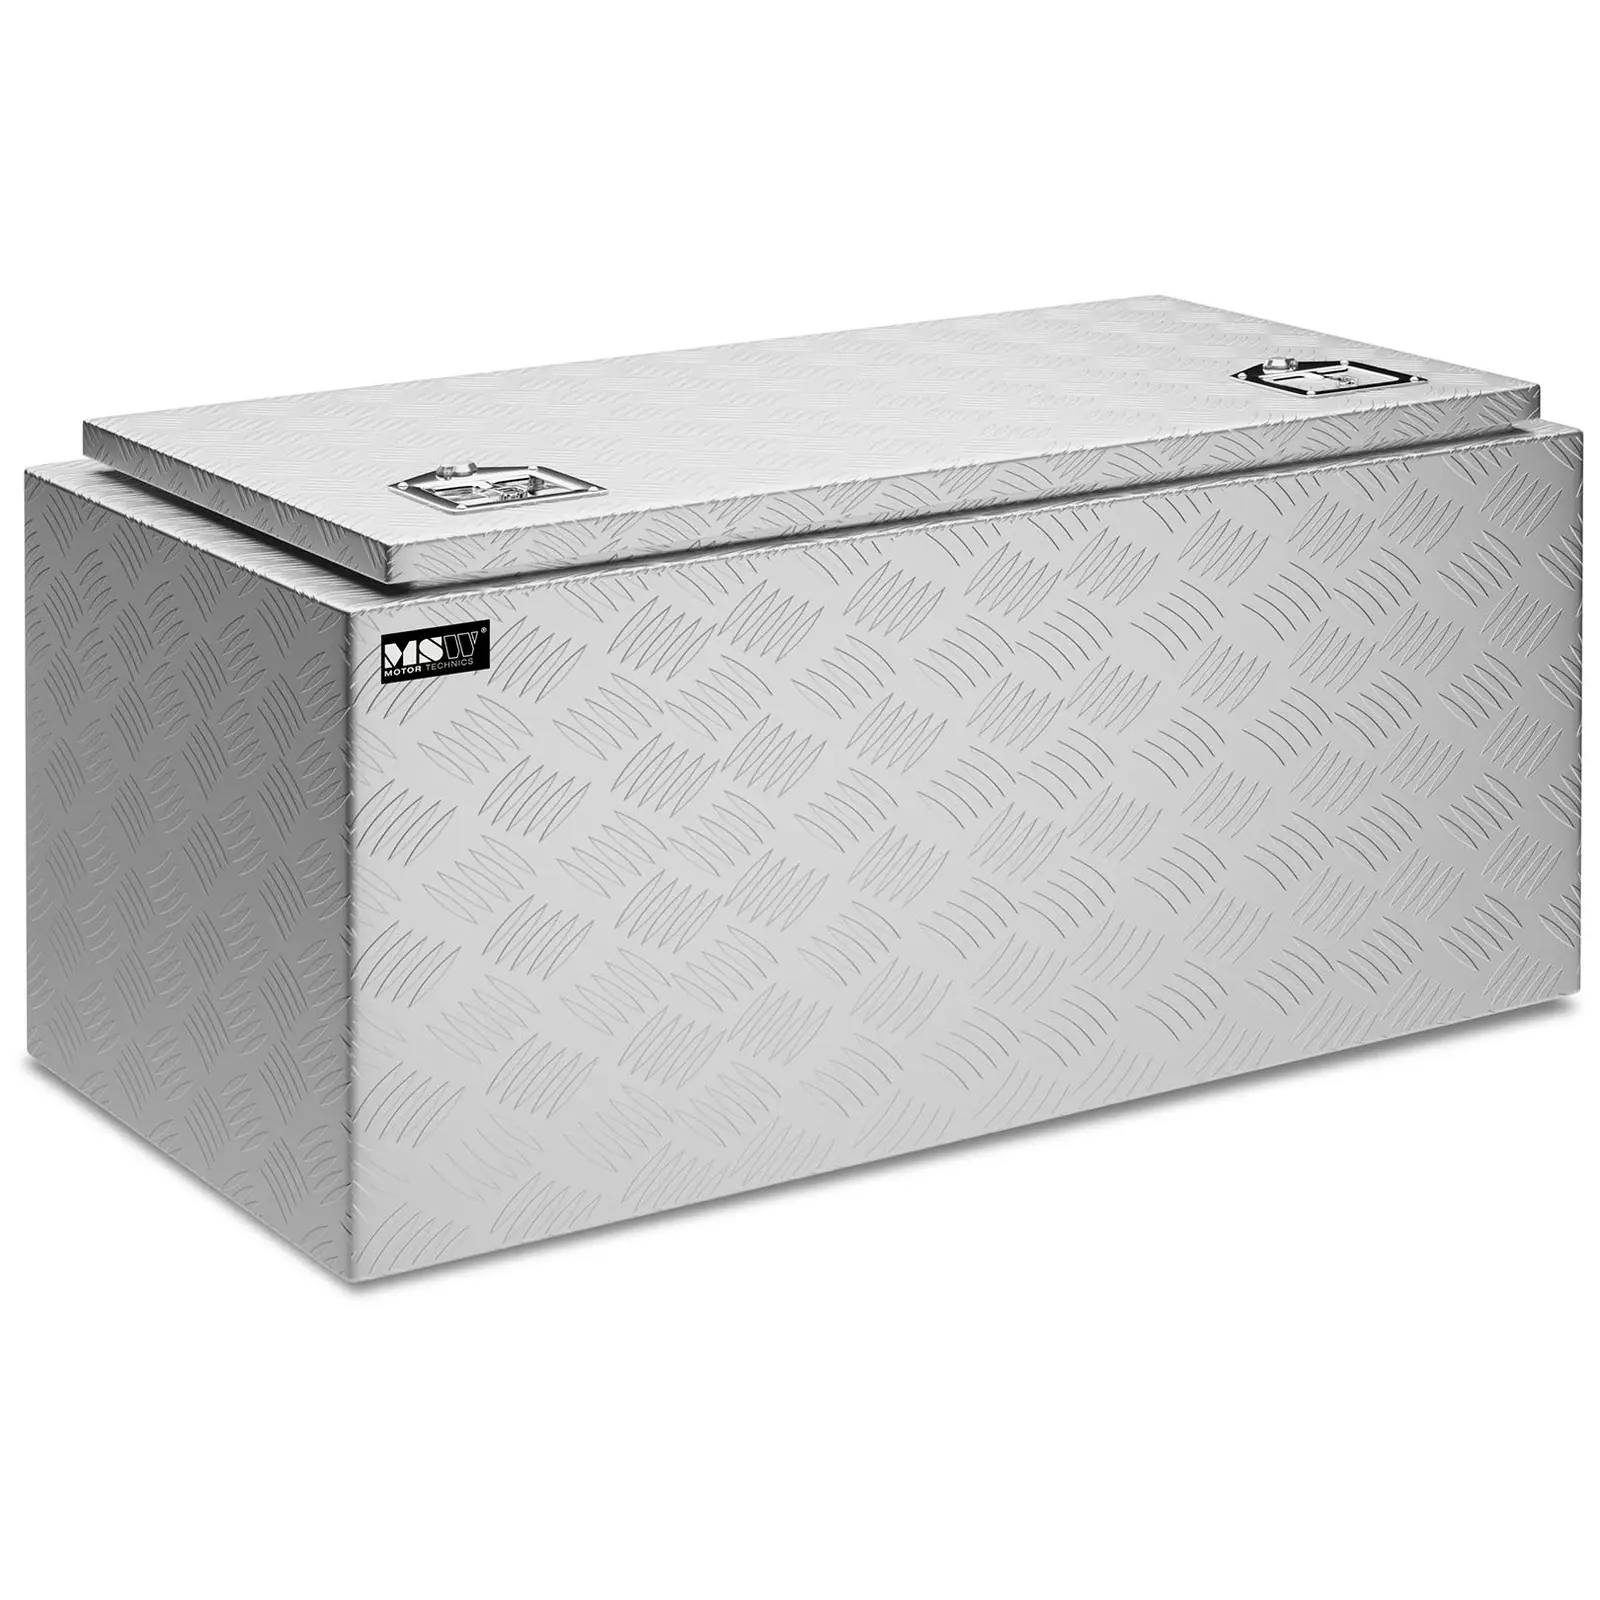 Aluminium Tool Box - 91 x 44.5 x 43 cm - 119 L